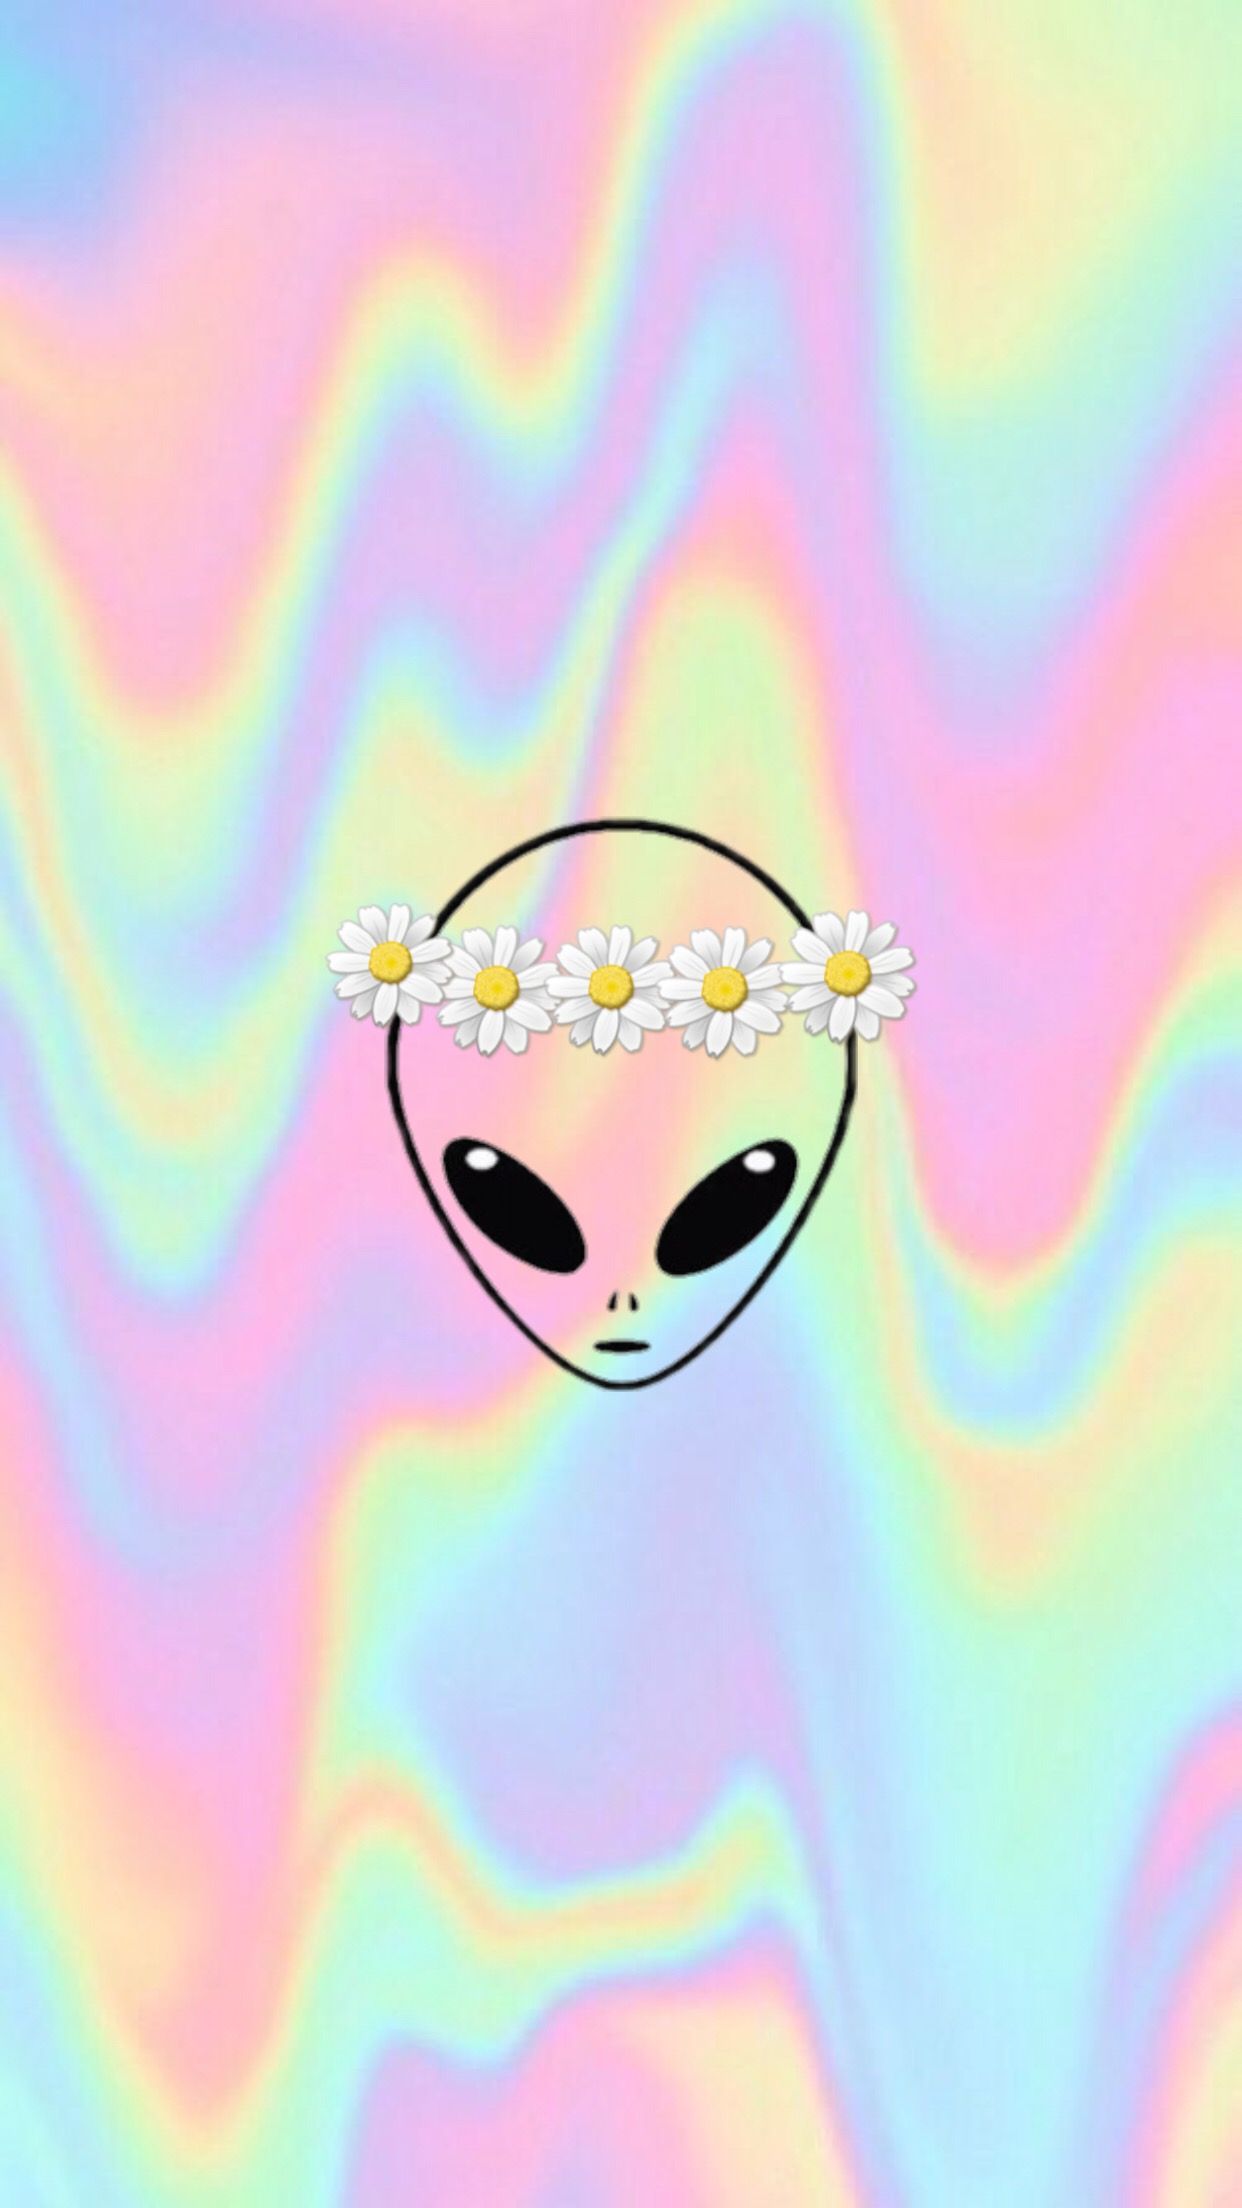 emoji alien wallpaper